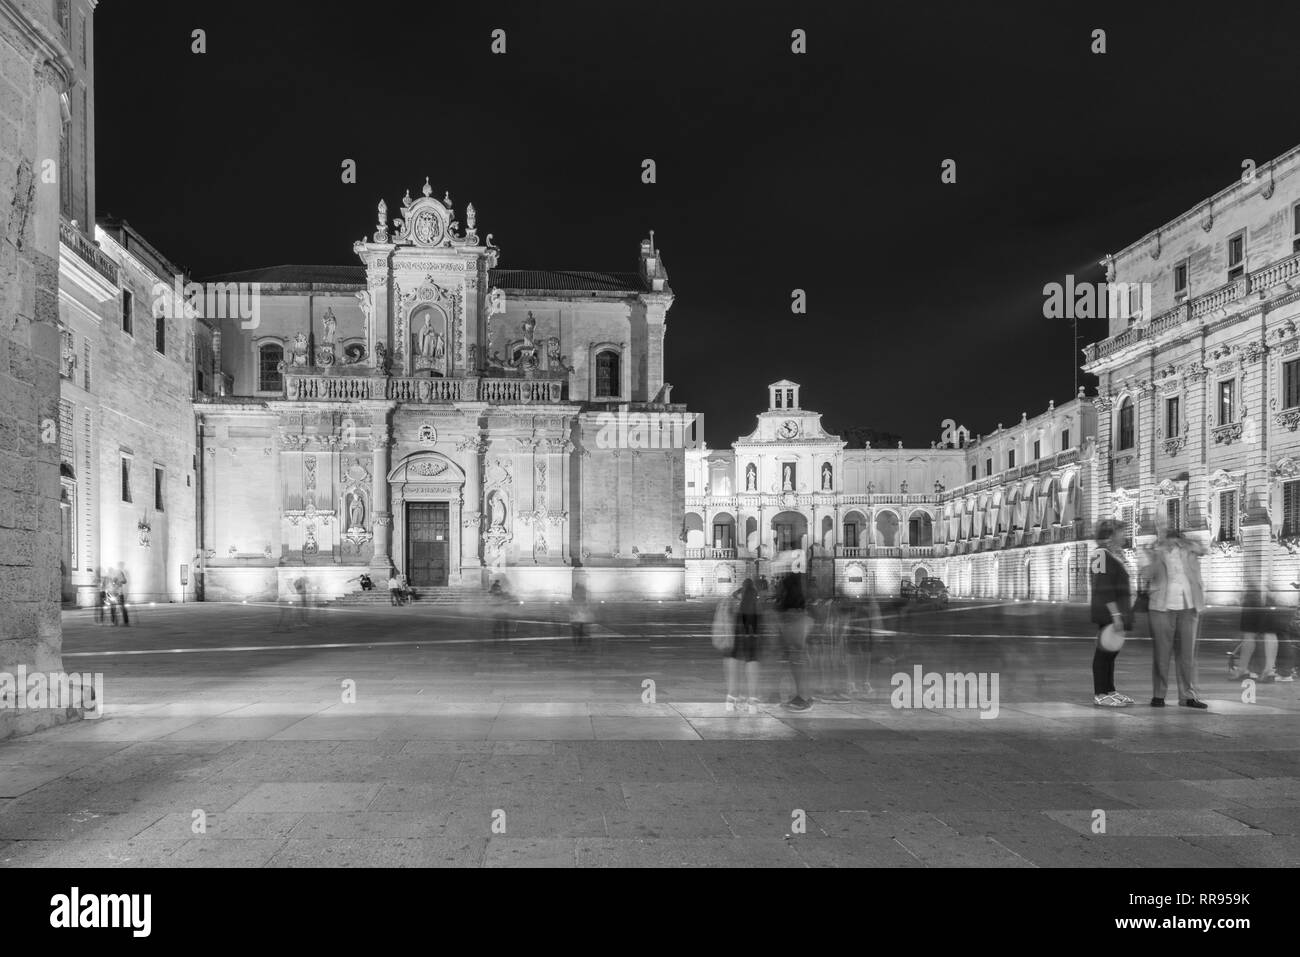 Lecce. Magic of Salento. Black and white Stock Photo - Alamy